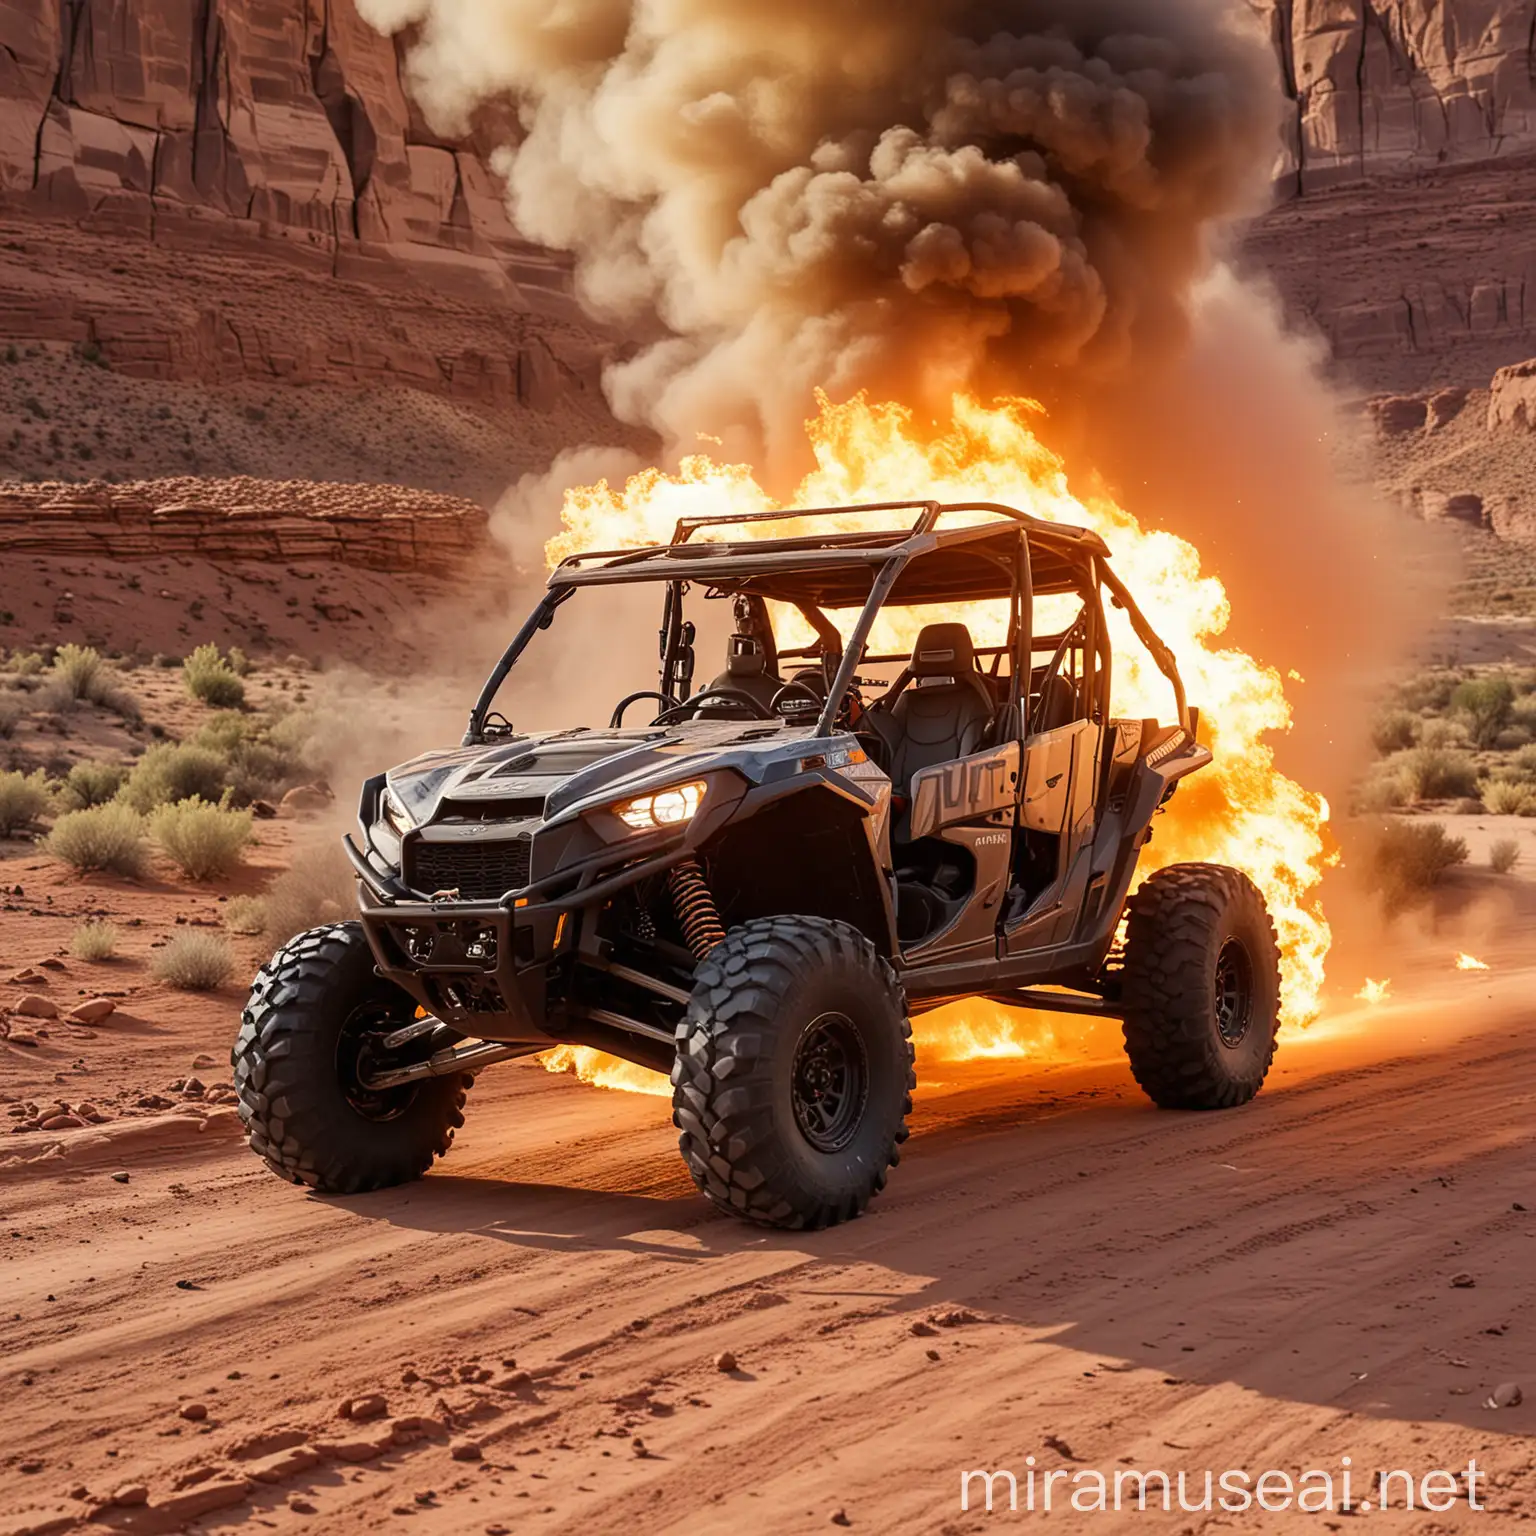 UTV all terrain vehicle on fire in moab utah, evening light